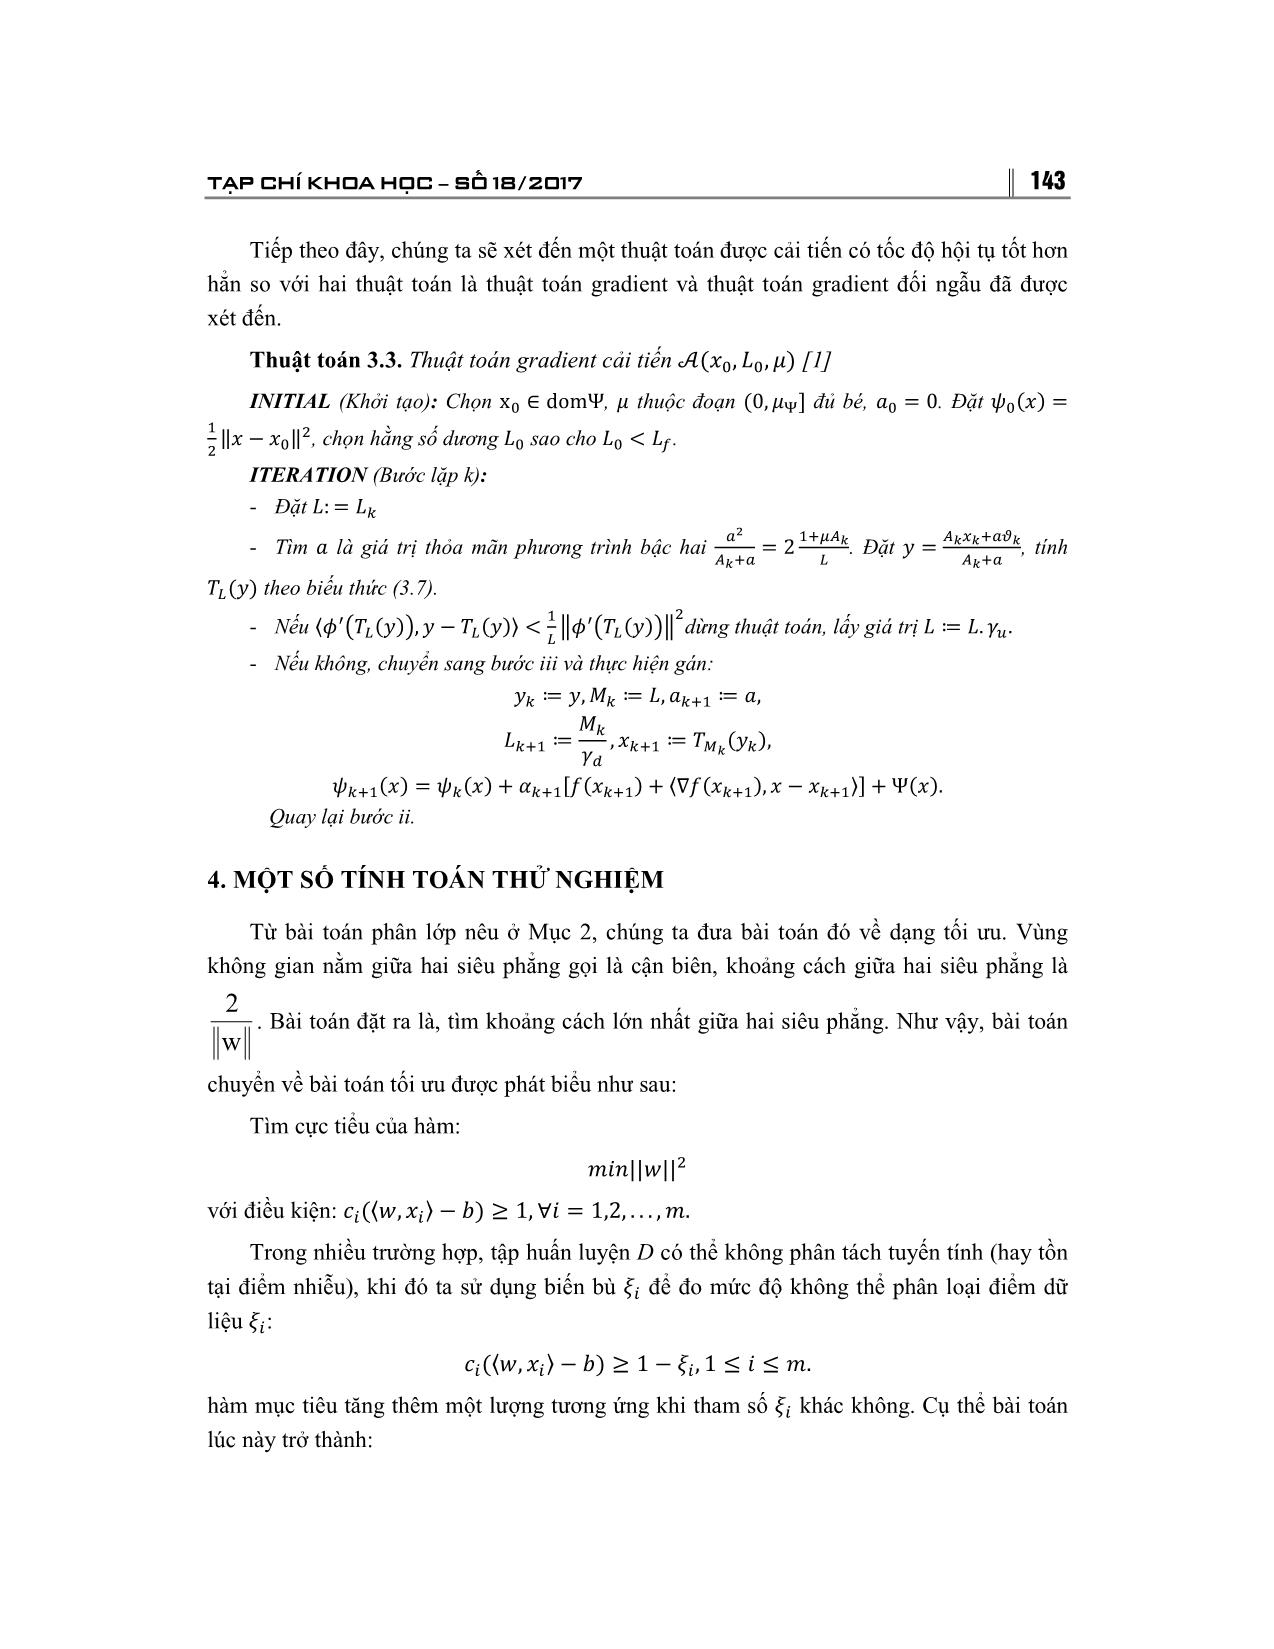 Giải bài toán tối ưu bằng phương pháp Gradient và ứng dụng trang 8